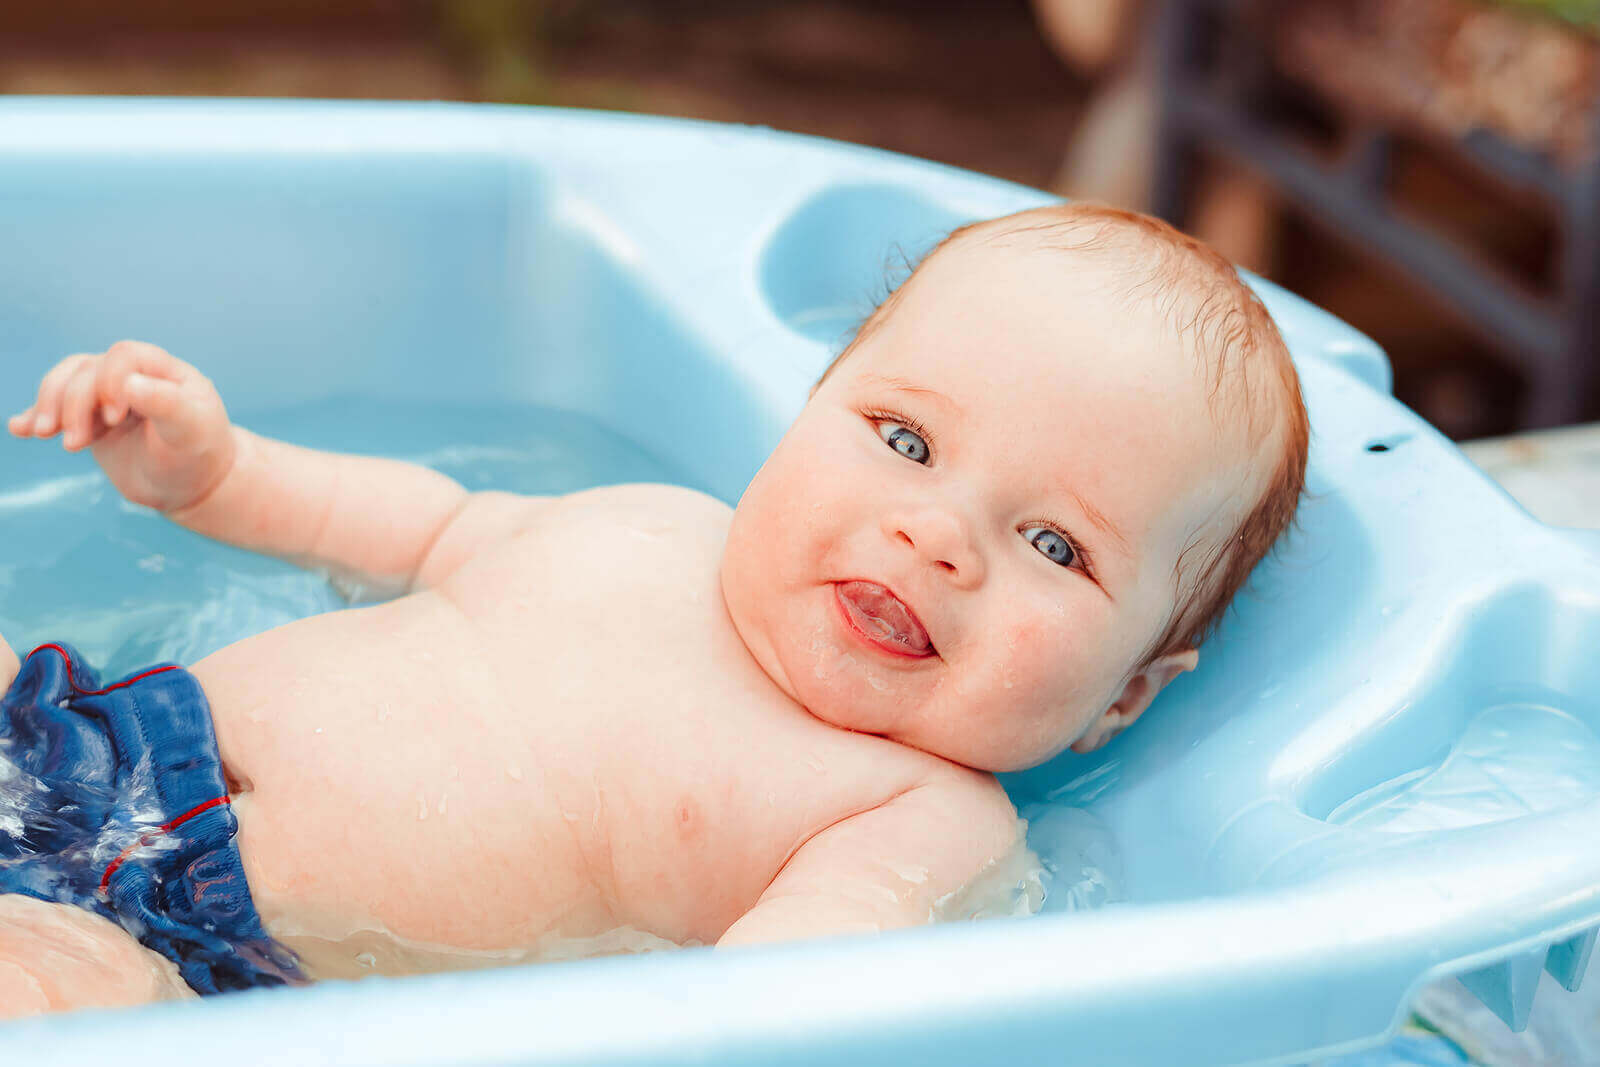 Vauvan kylpyhetken on hyvä olla rauhallinen ja rentouttava